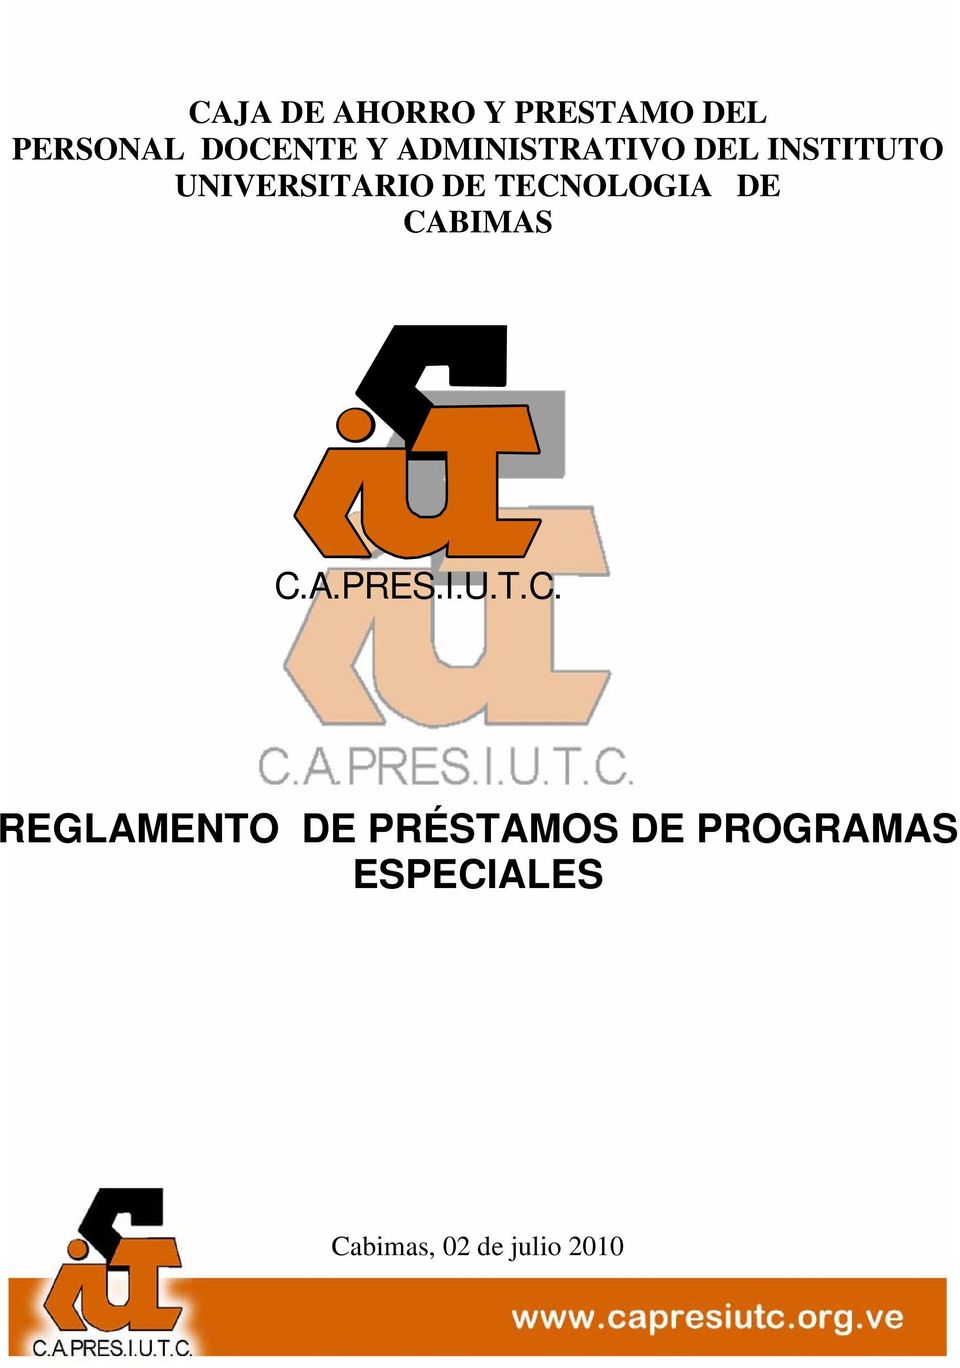 TECNOLOGIA DE CABIMAS C.A.PRES.I.U.T.C. REGLAMENTO